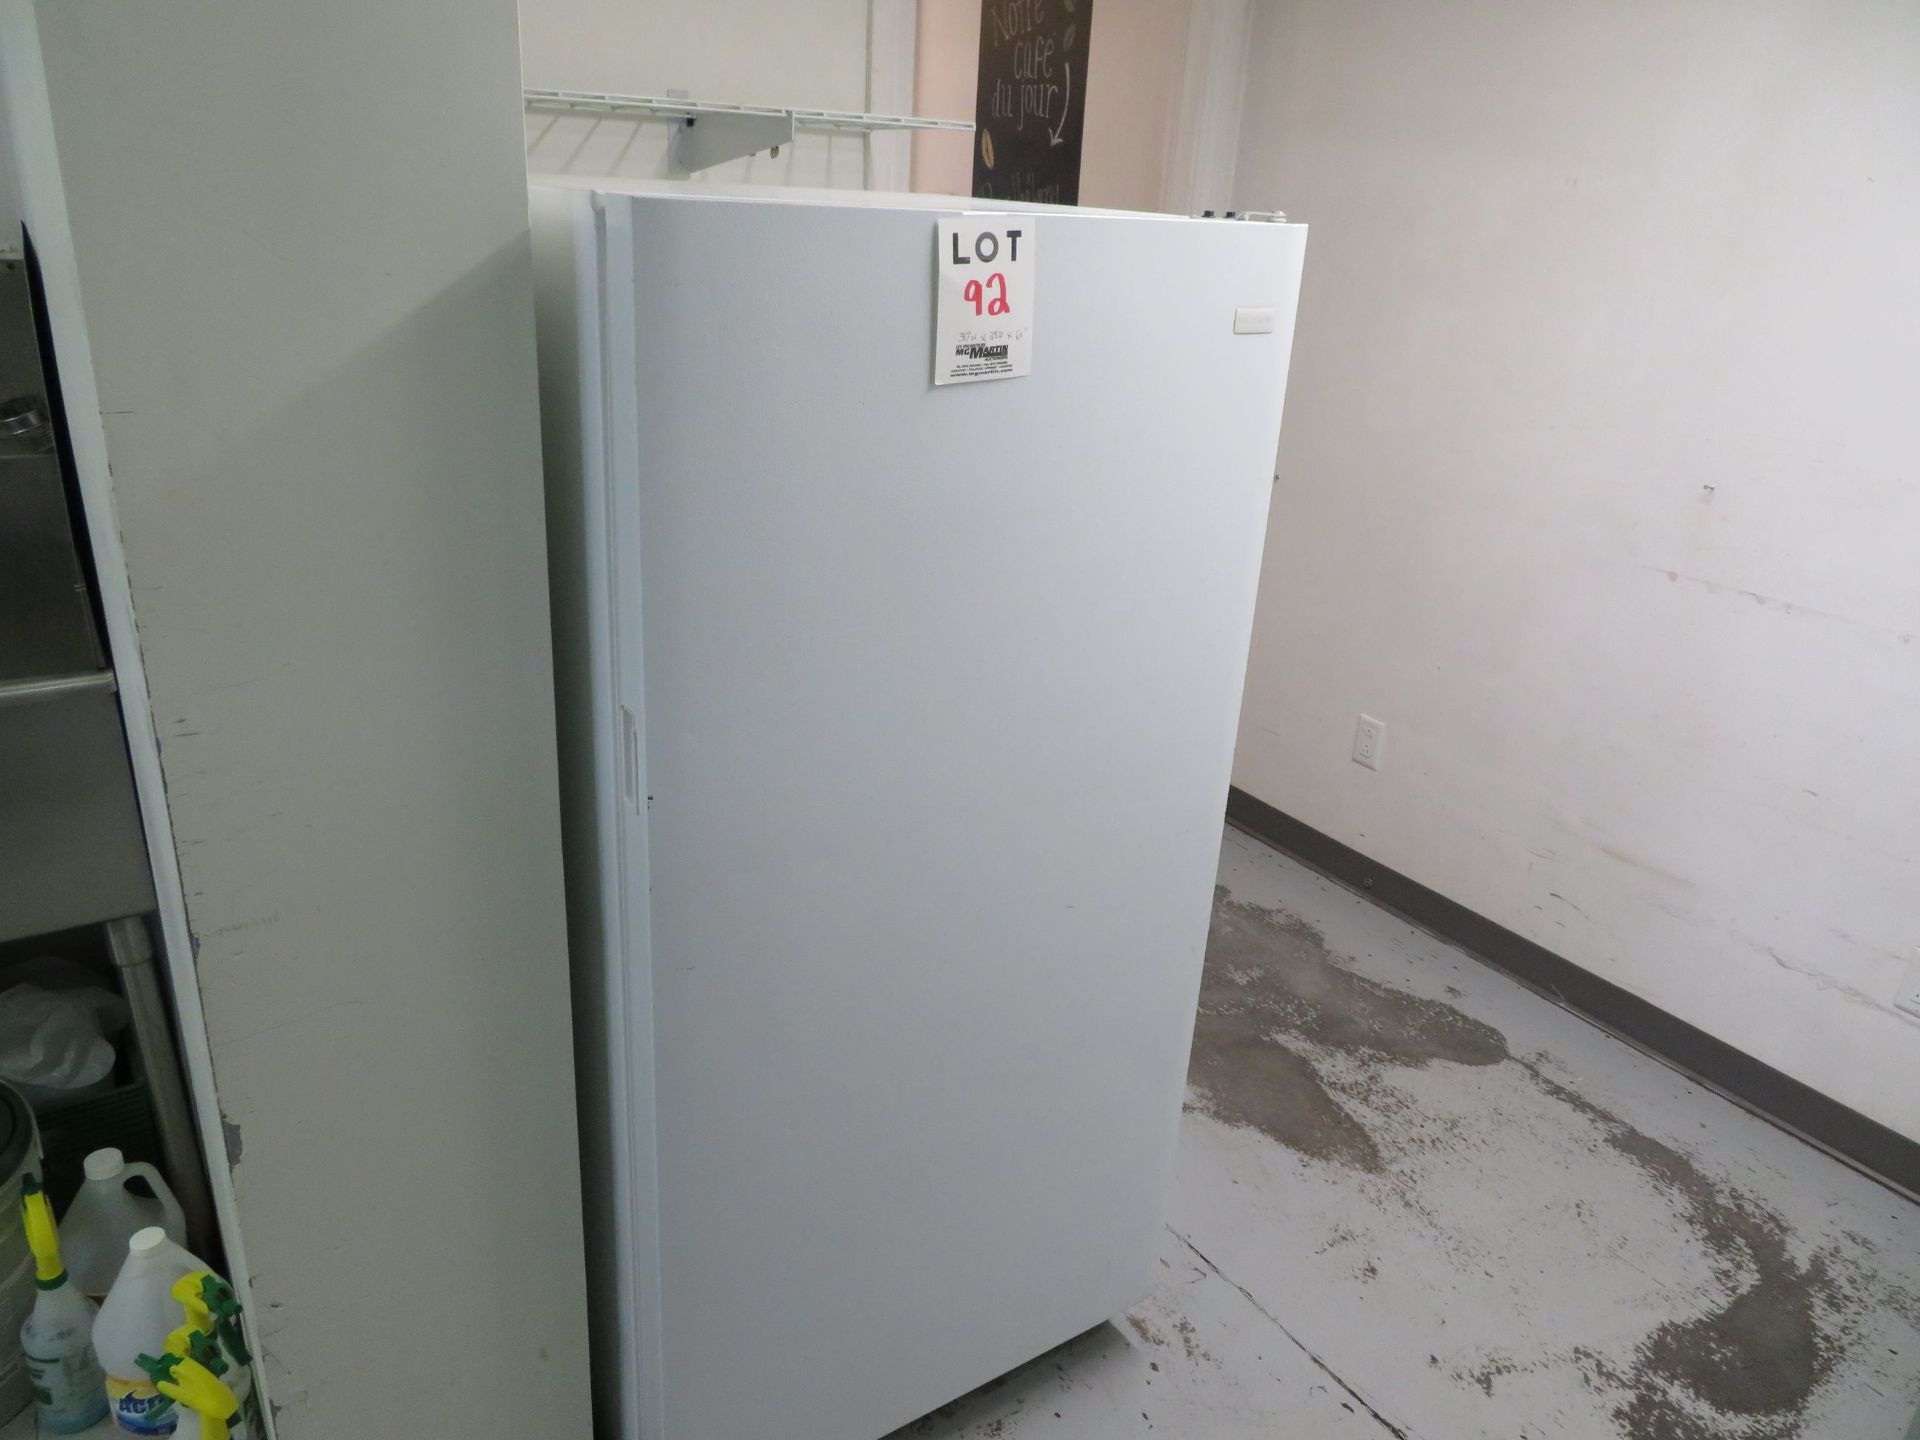 FRIGIDAIRE freezer, approx. 30"w x 28"d x 61"h